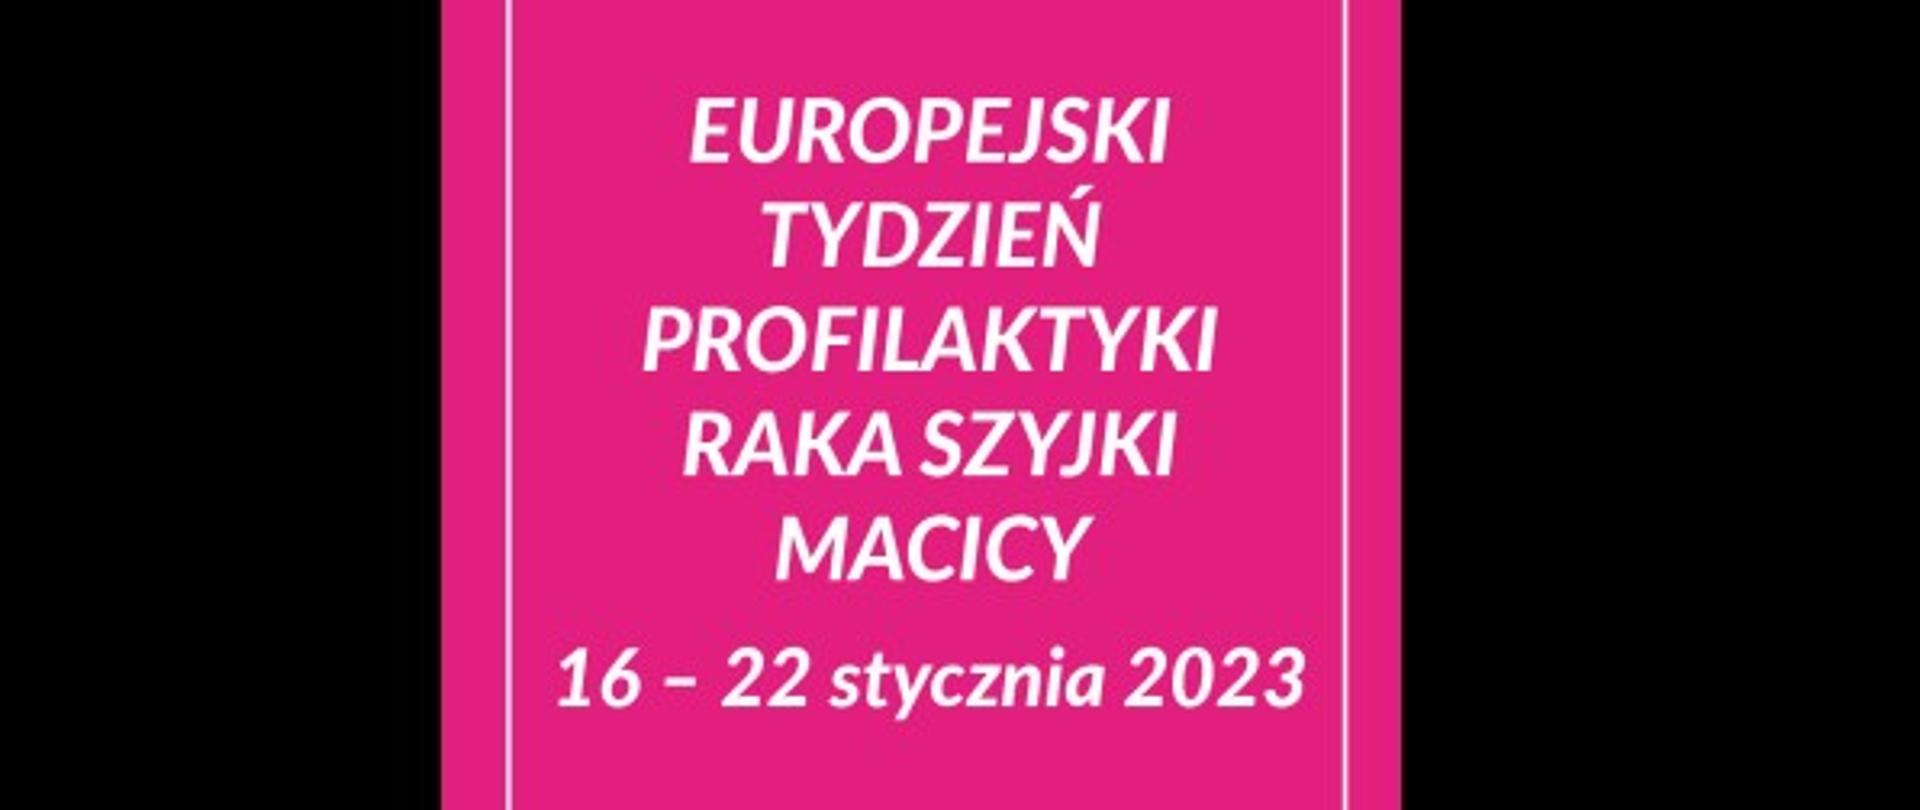 Europejski Tydzień Profilaktyki Raka Szyjki Macicy 2023_+panorama